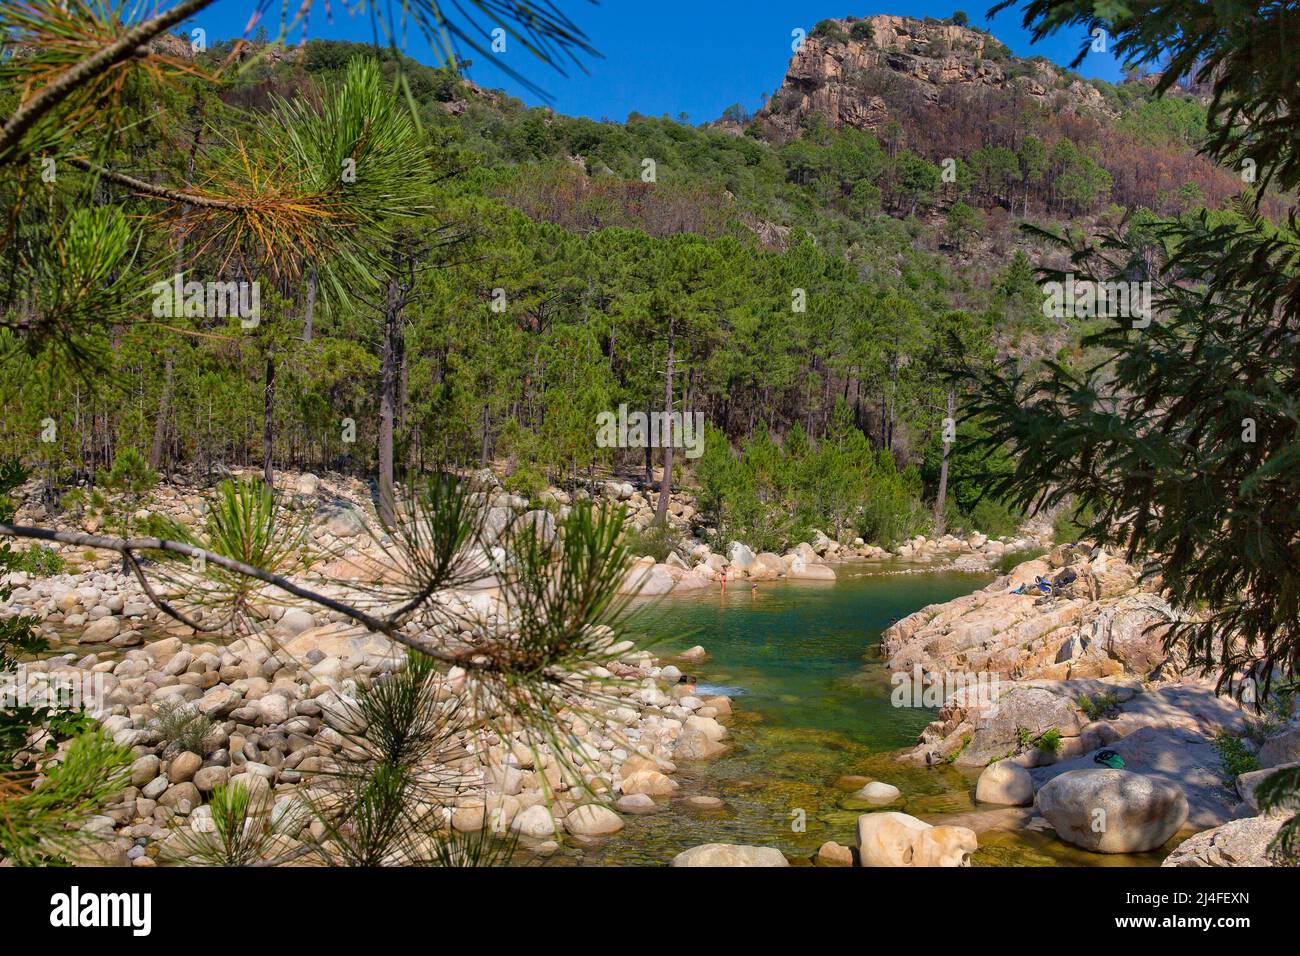 La rivière Solenzara avec ses magnifiques piscines naturelles dans l'eau cristalline au sud-est de l'île de Corse, en France Banque D'Images